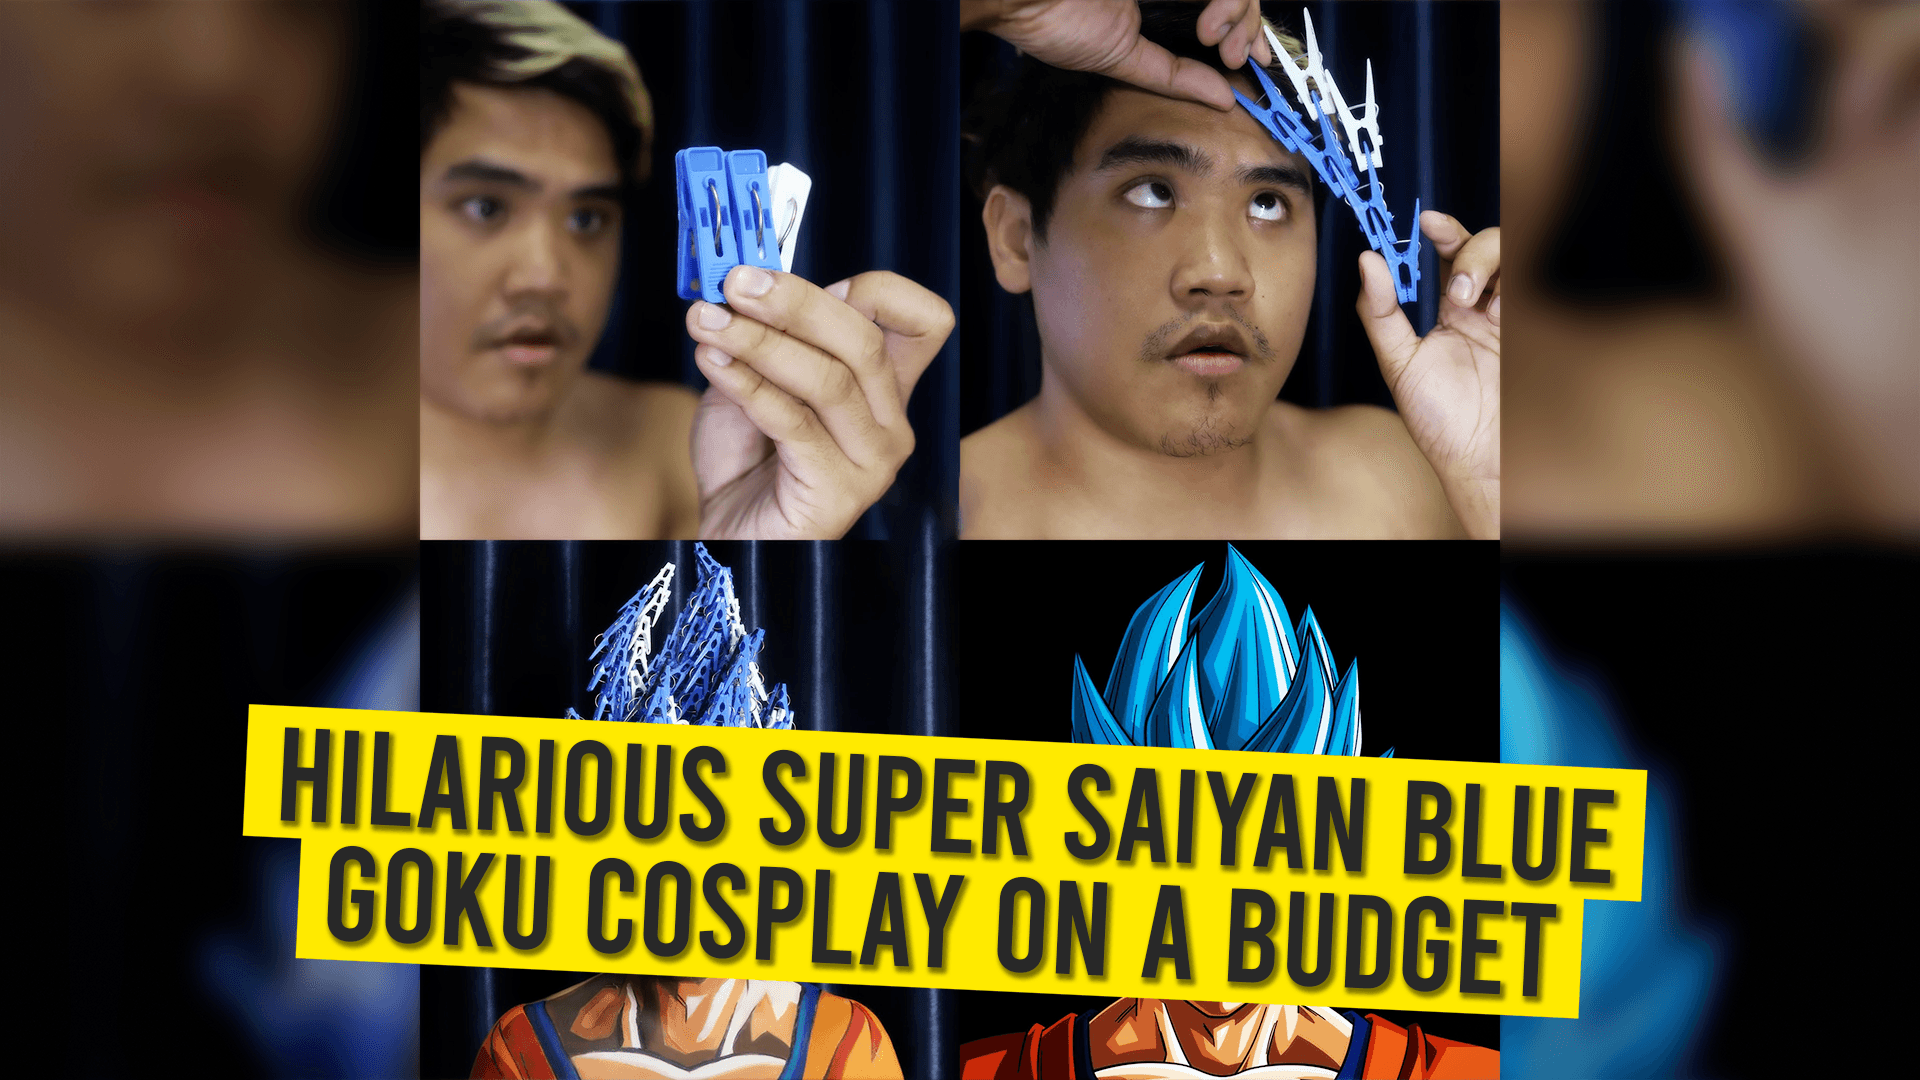 Hilarious Super Saiyan Blue Goku Cosplay On A Budget.